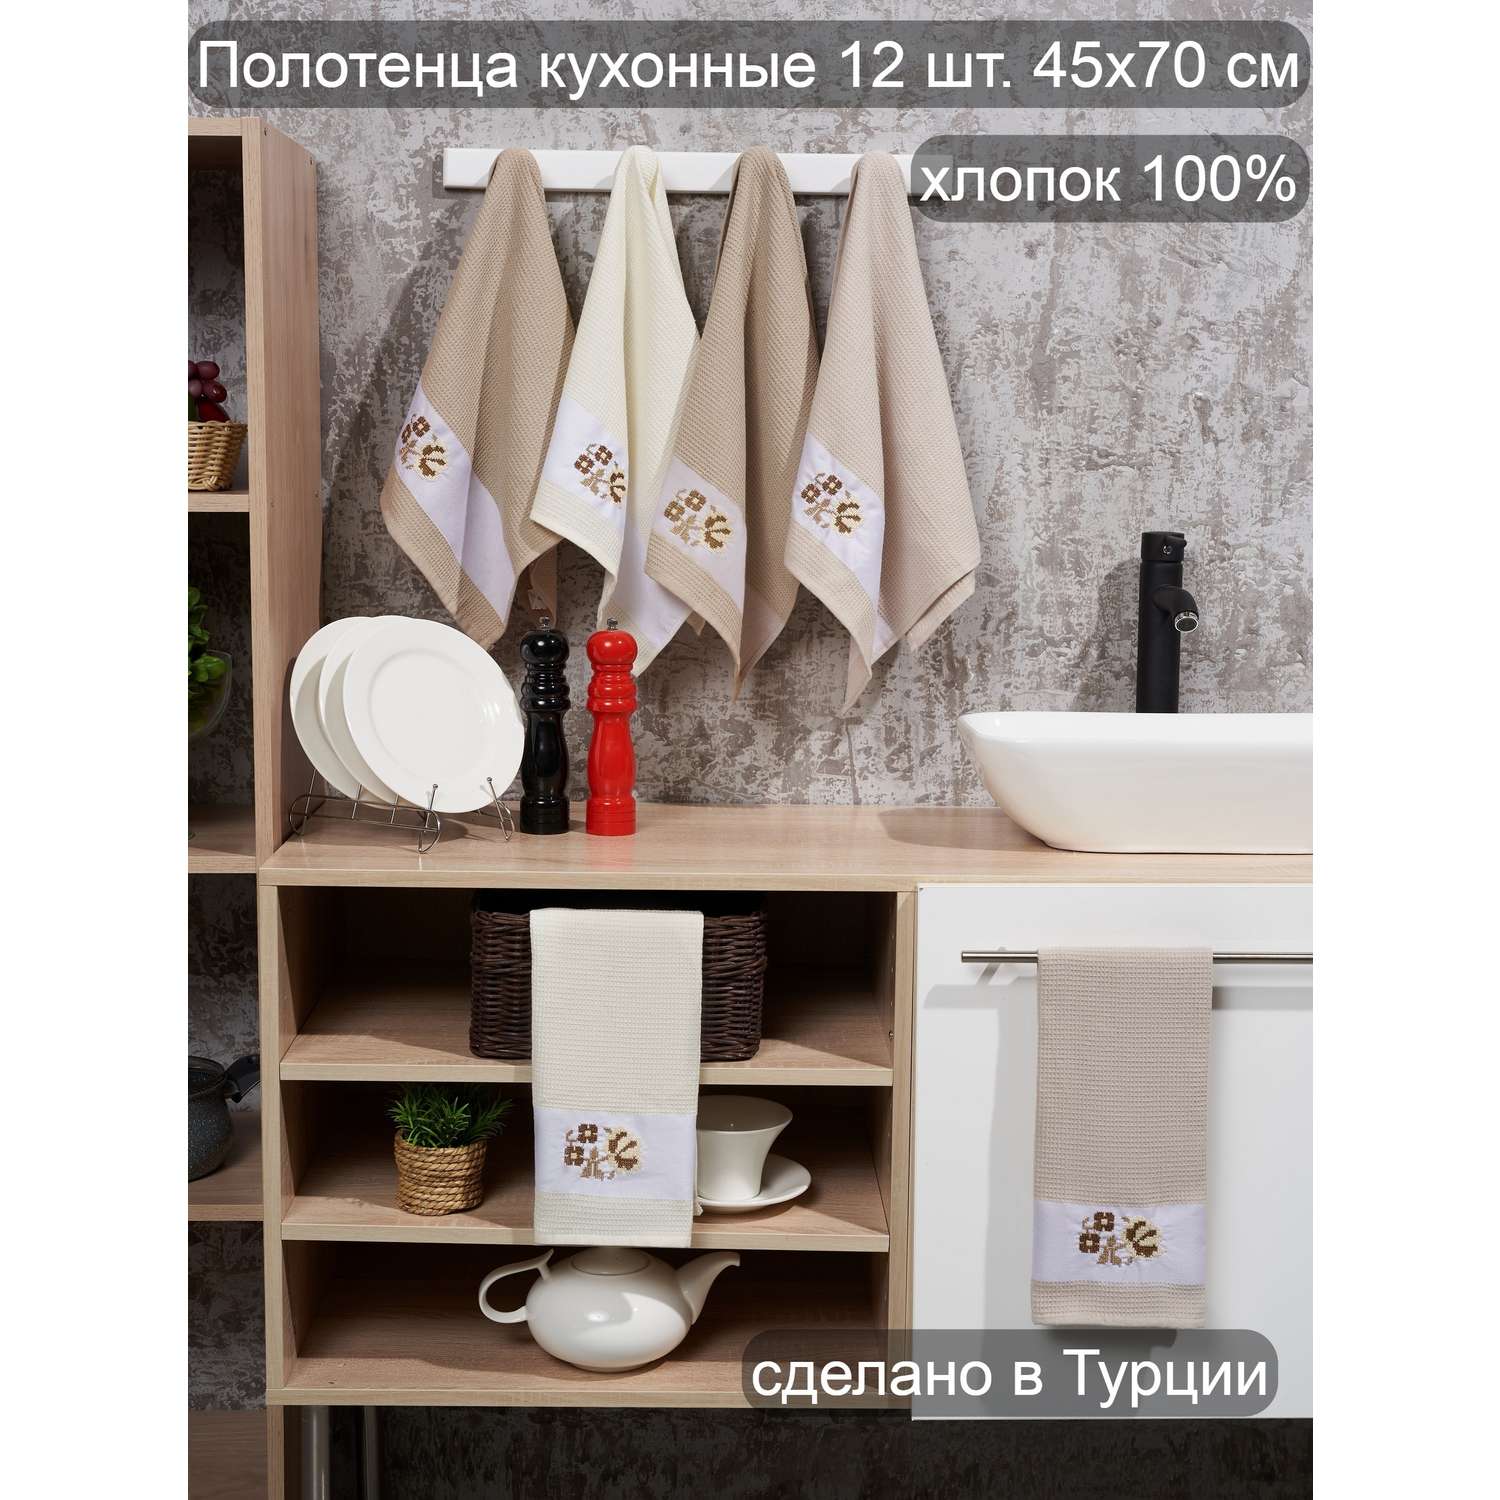 Набор кухонных полотенец 12 шт ATLASPLUS 45х70 см вафелные хлопок бежевые - фото 1